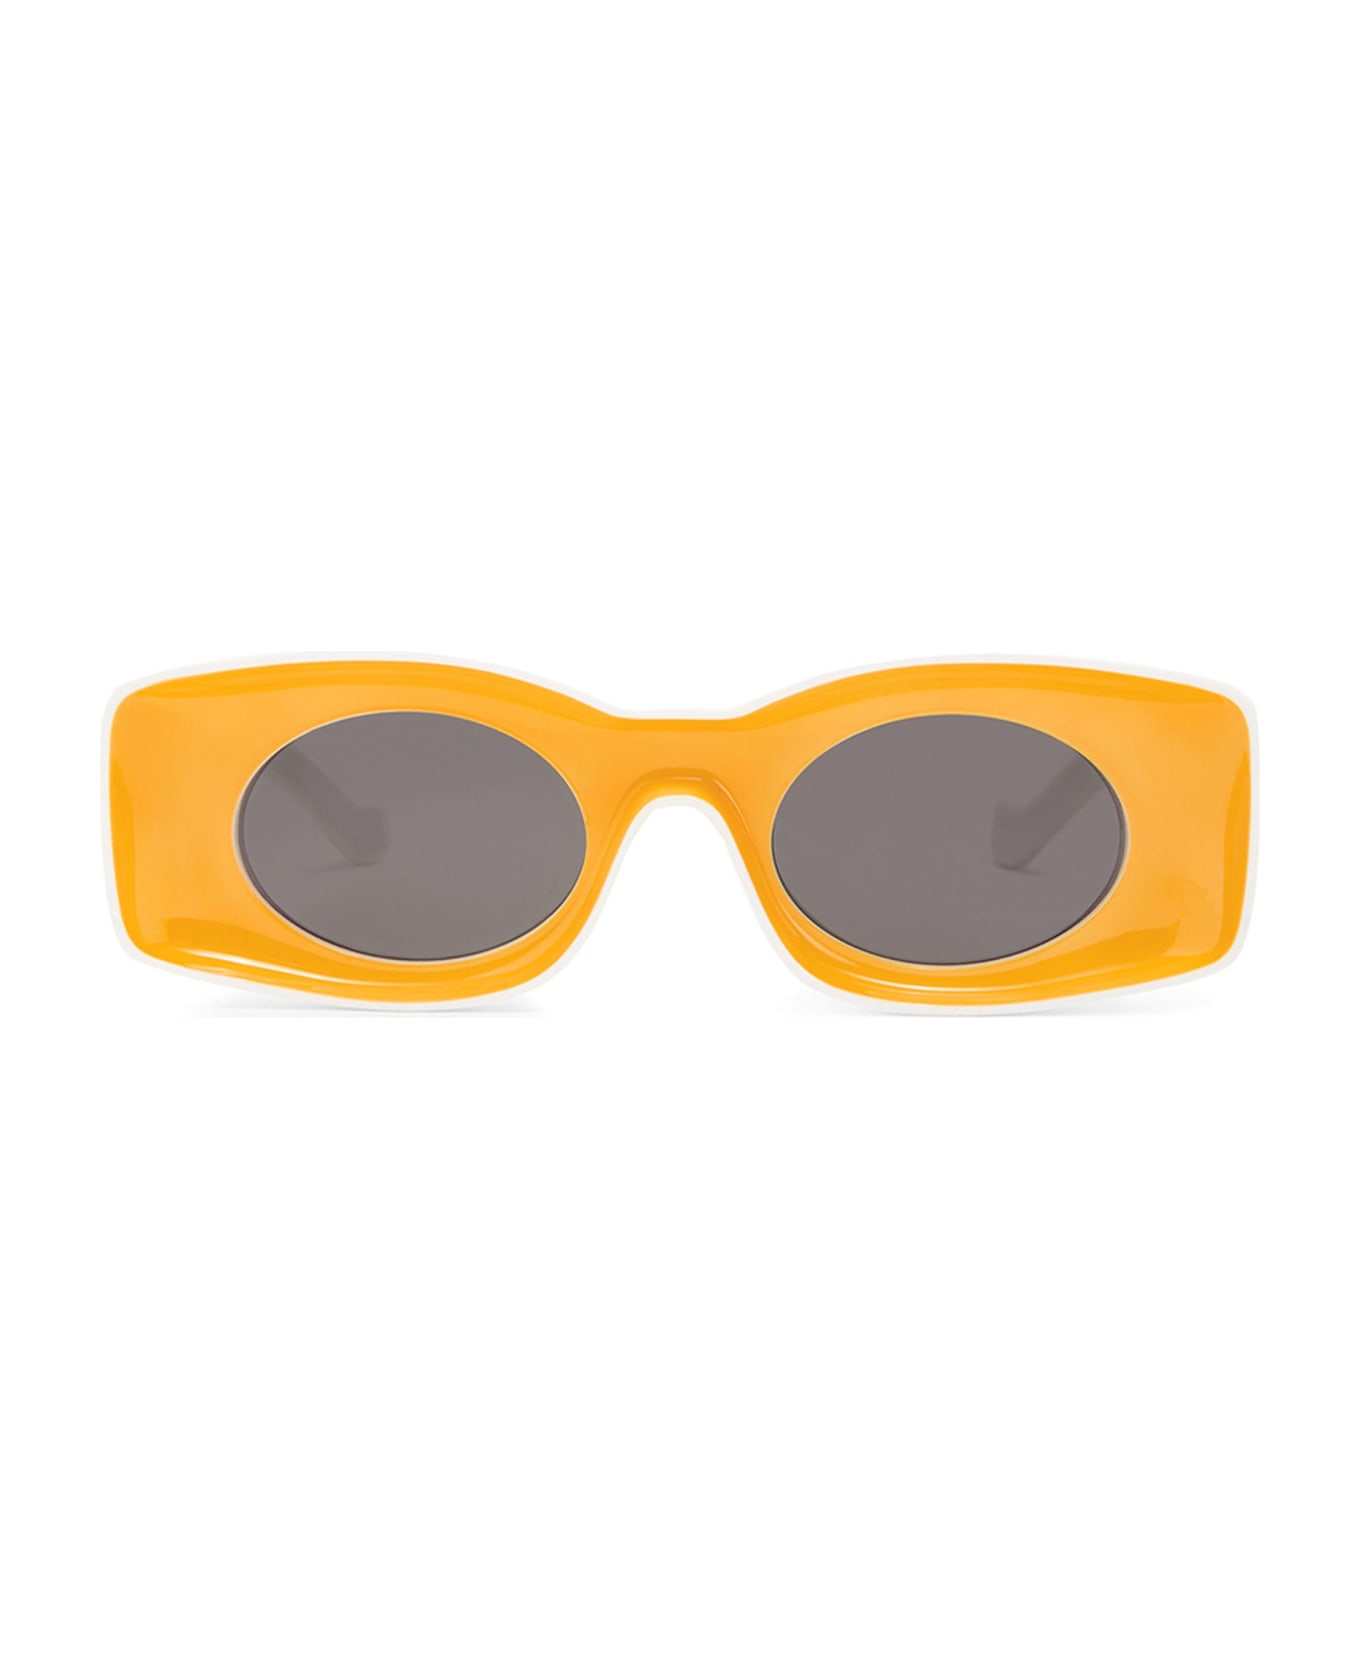 Loewe Lw40033i - Yellow / White Sunglasses - yellow サングラス